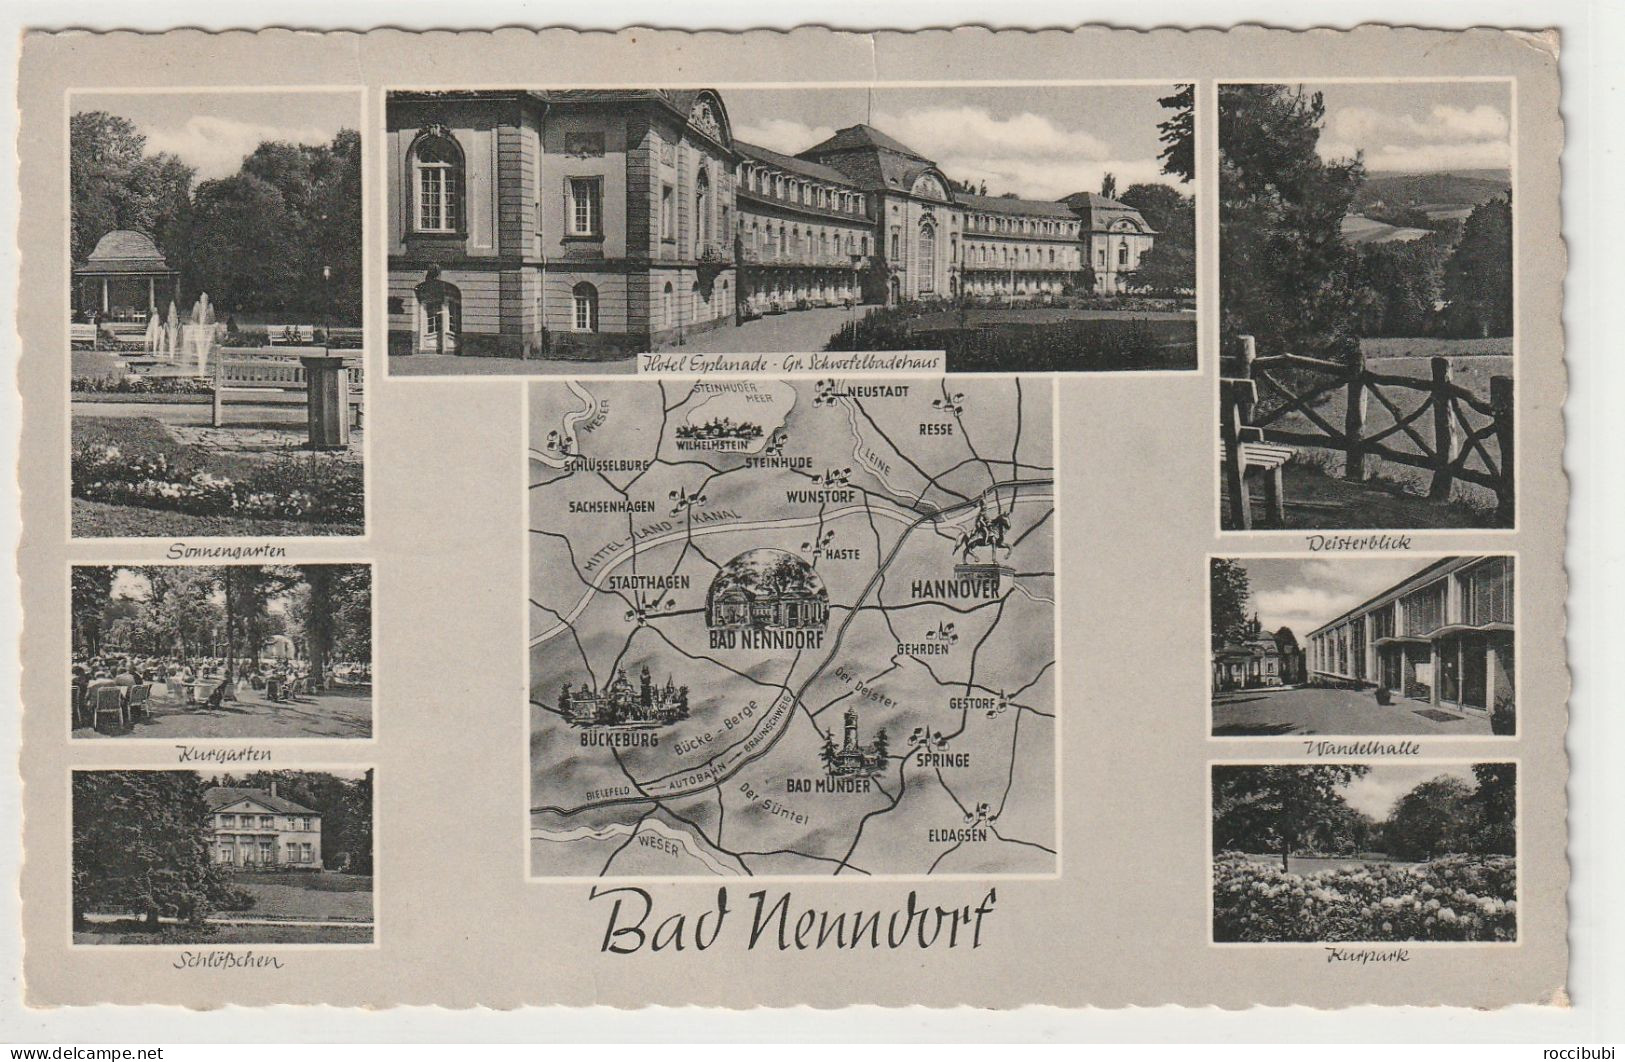 Bad Nenndorf, Niedersachsen - Bad Nenndorf